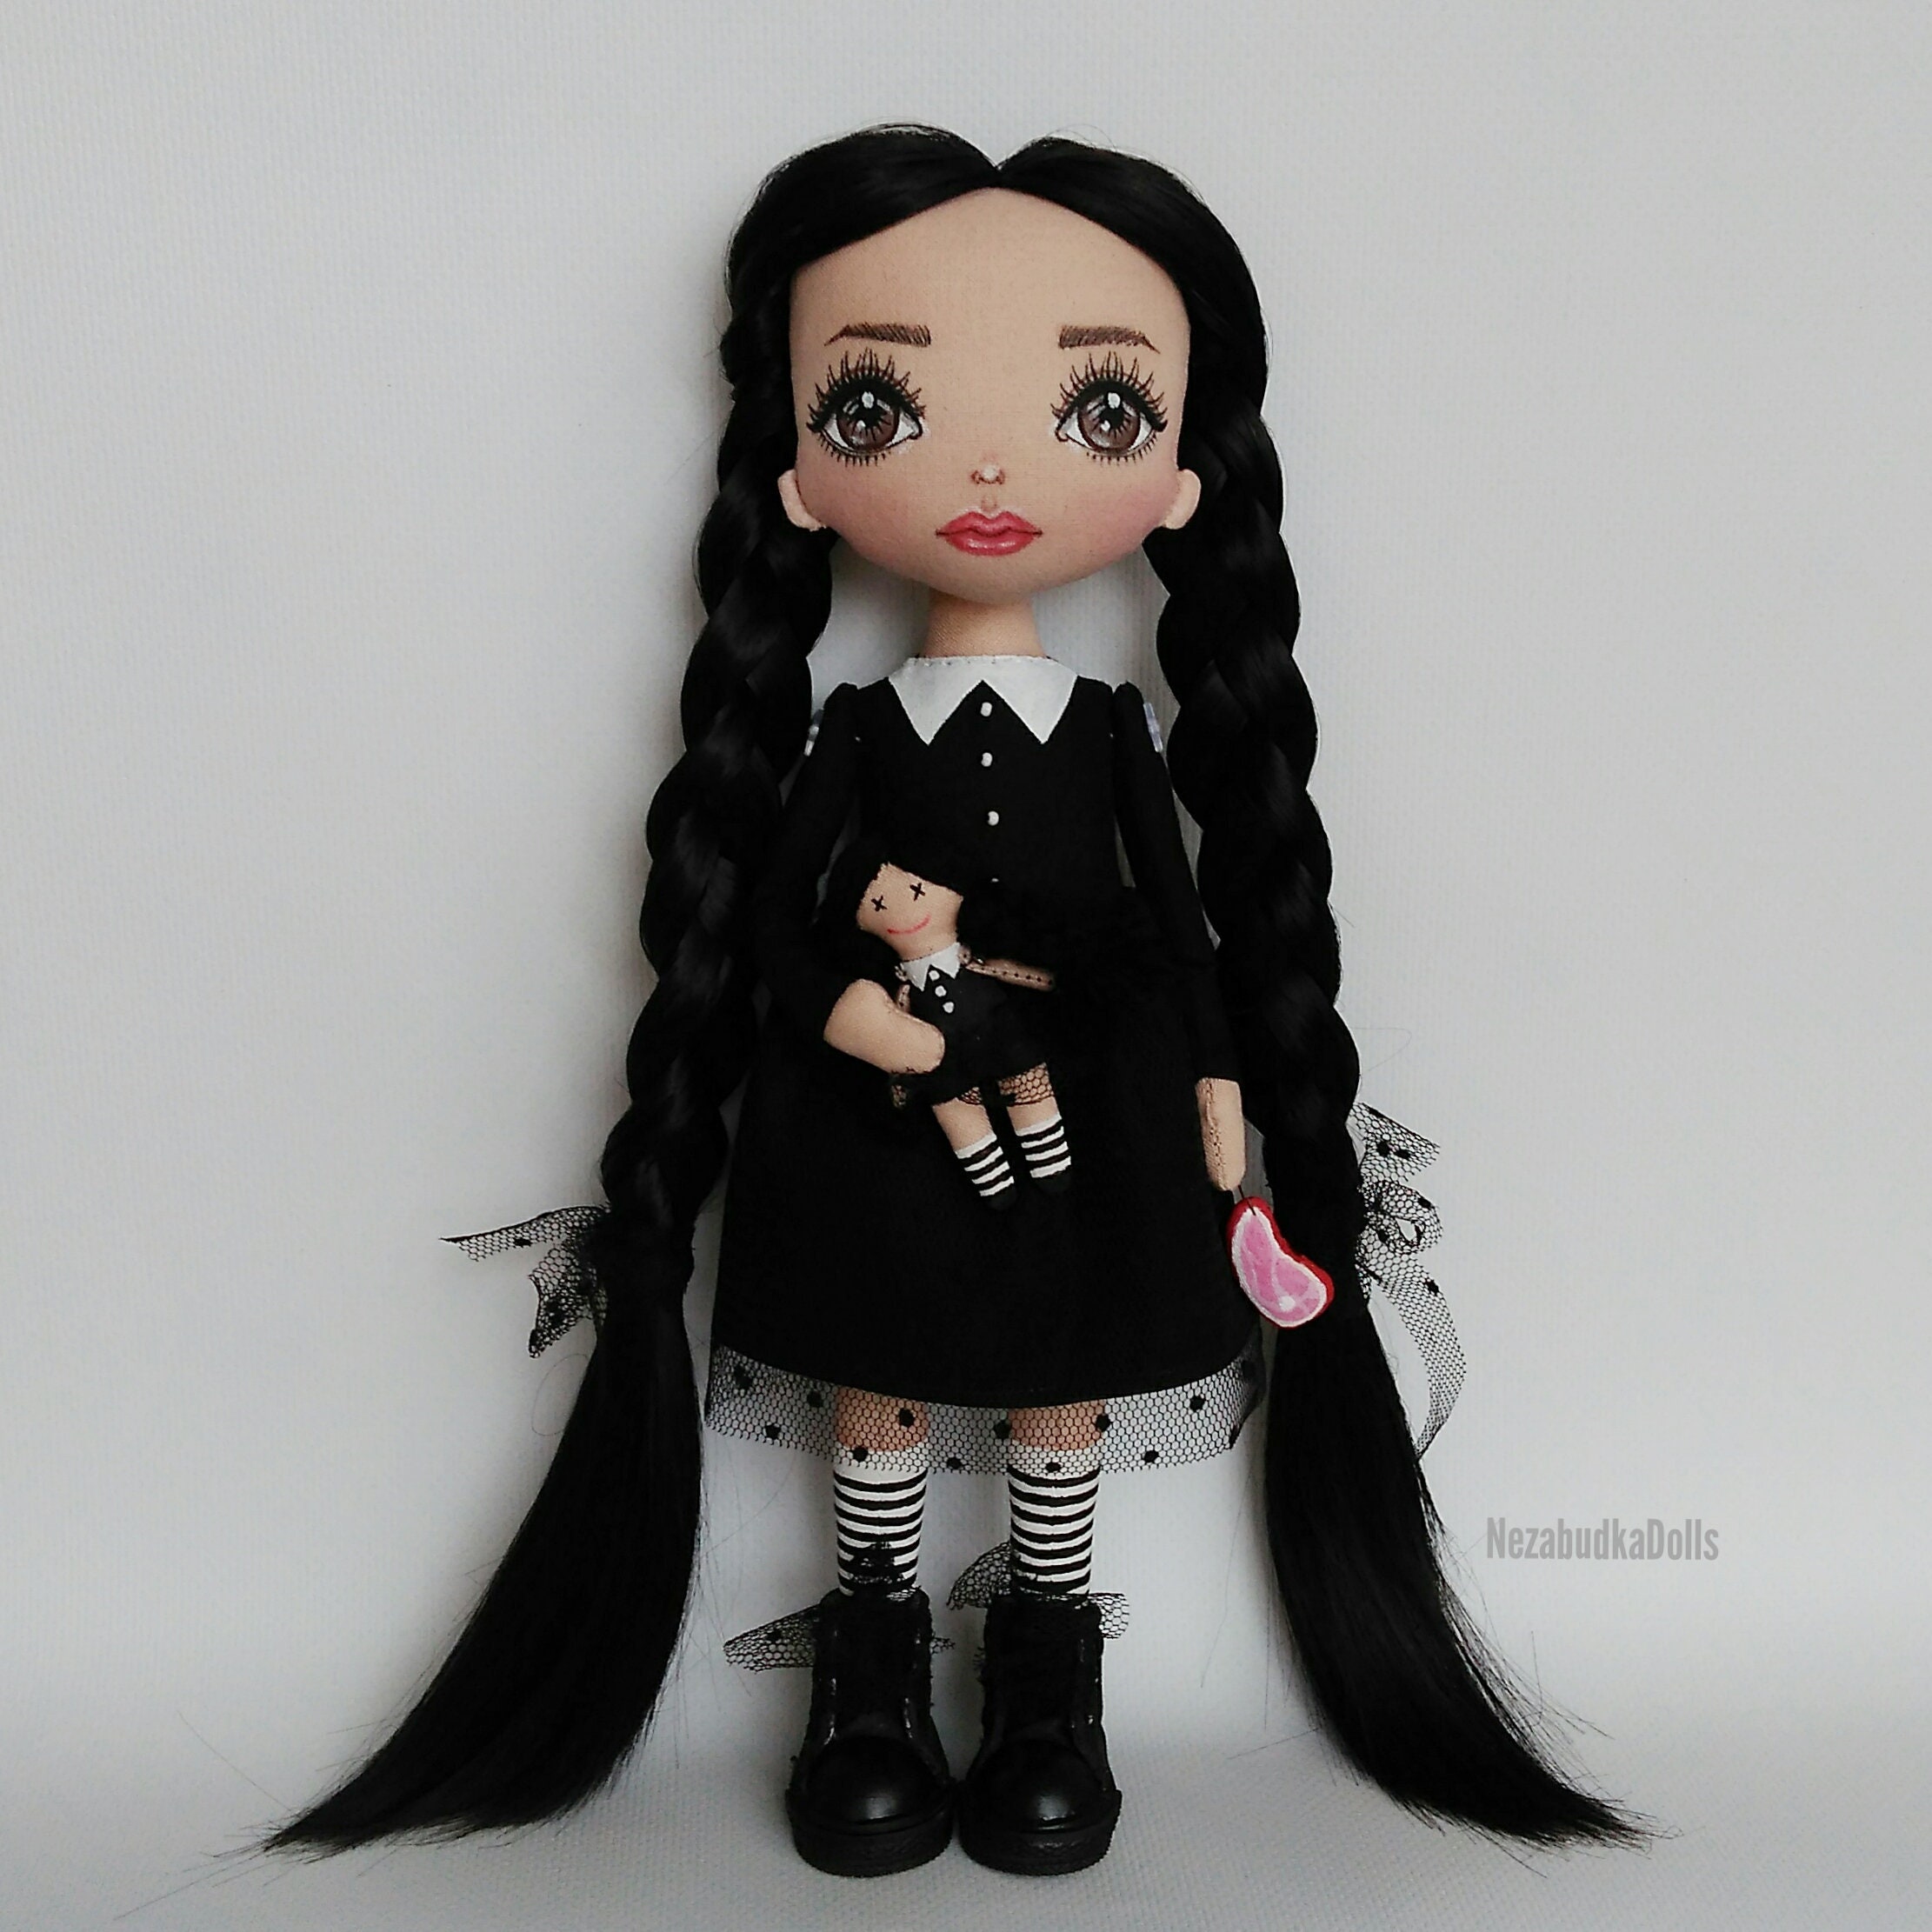 Wednesday Addams doll Creepy art doll Gothic art unique doll Rag doll Movie  doll